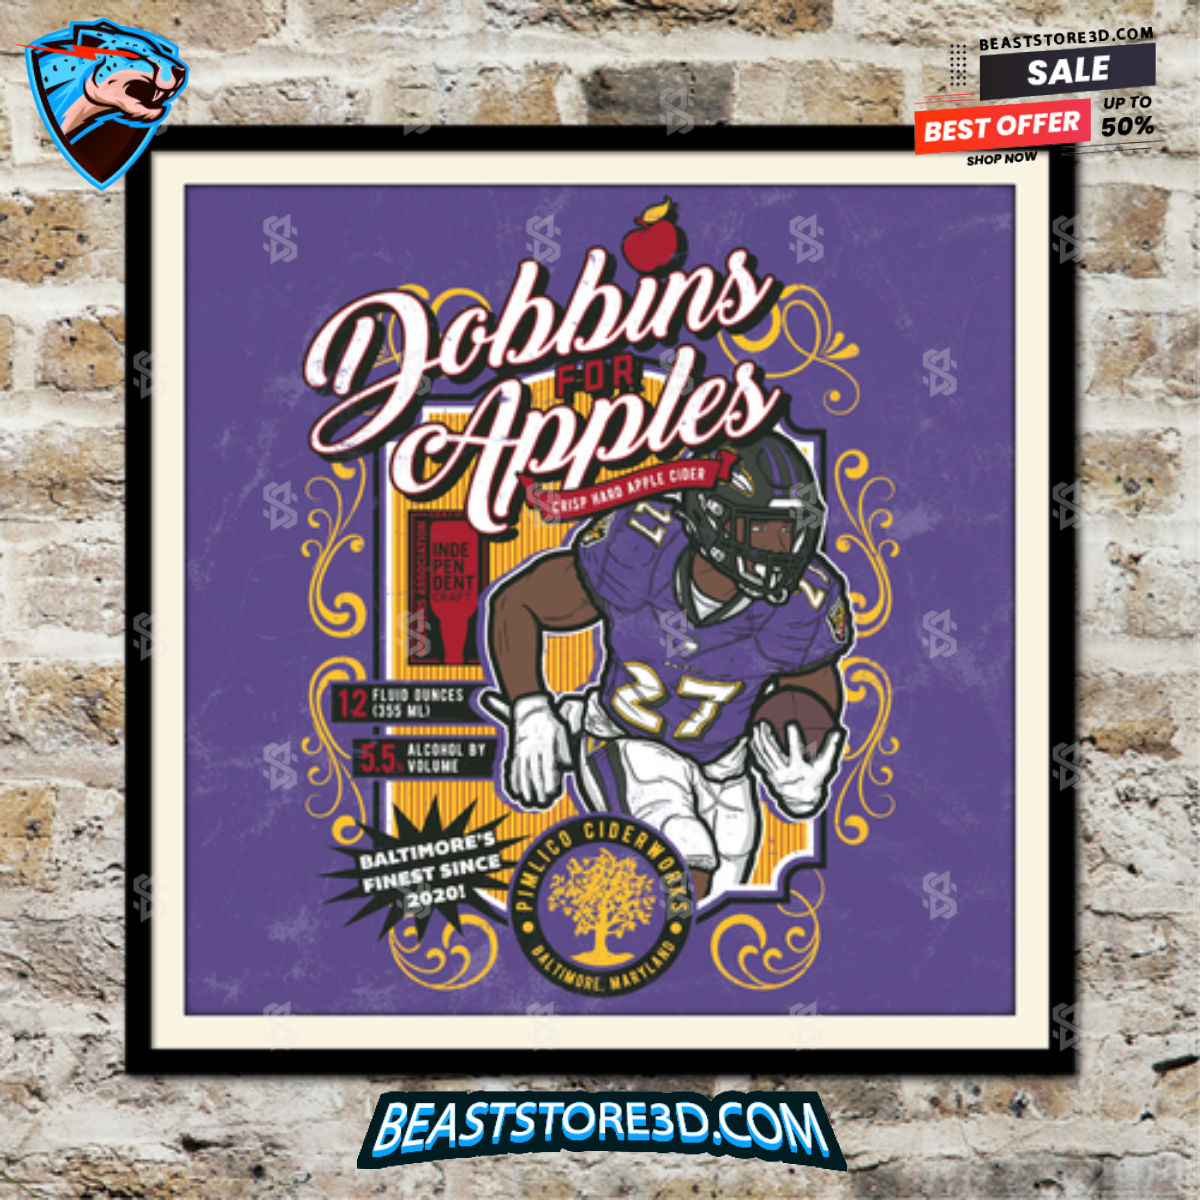 J.K. Dobbins Baltimore Ravens Fake Craft Beer Label Print 1697116470786 aimUq.jpg